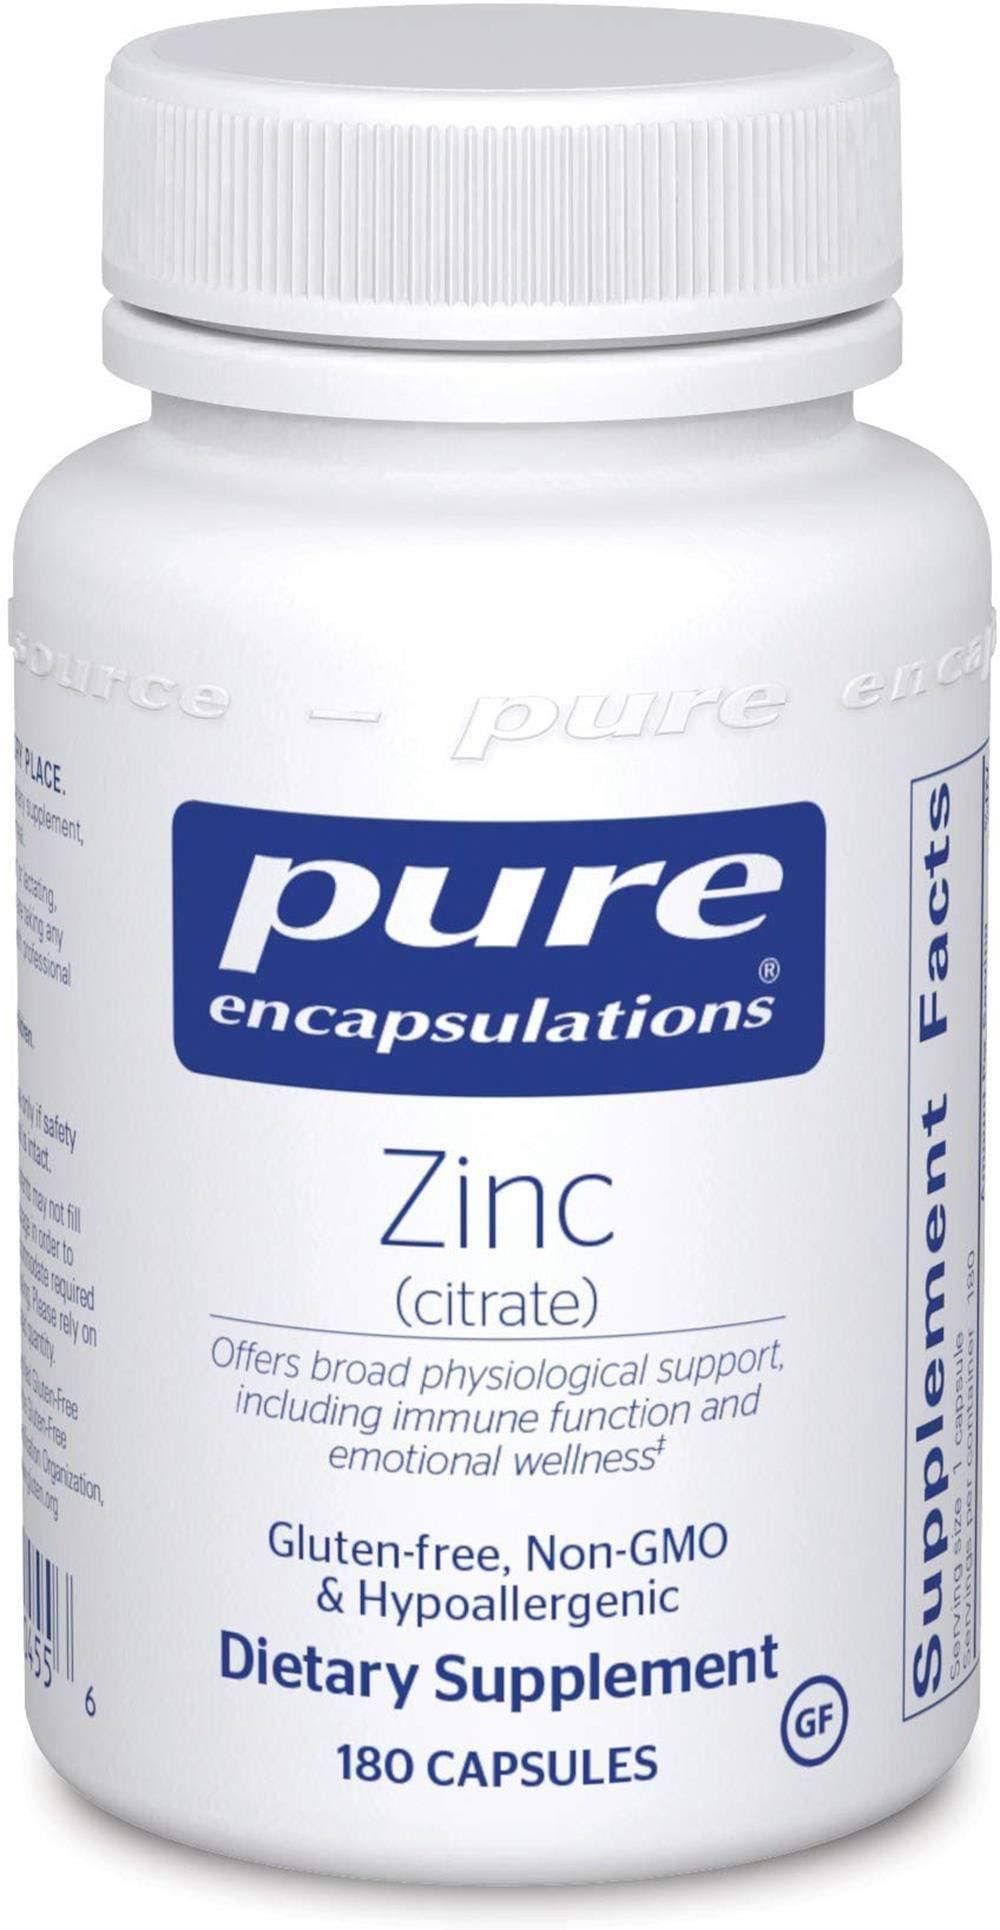 Pure Encapsulations Zinc Citrate Supplement - 180 Count